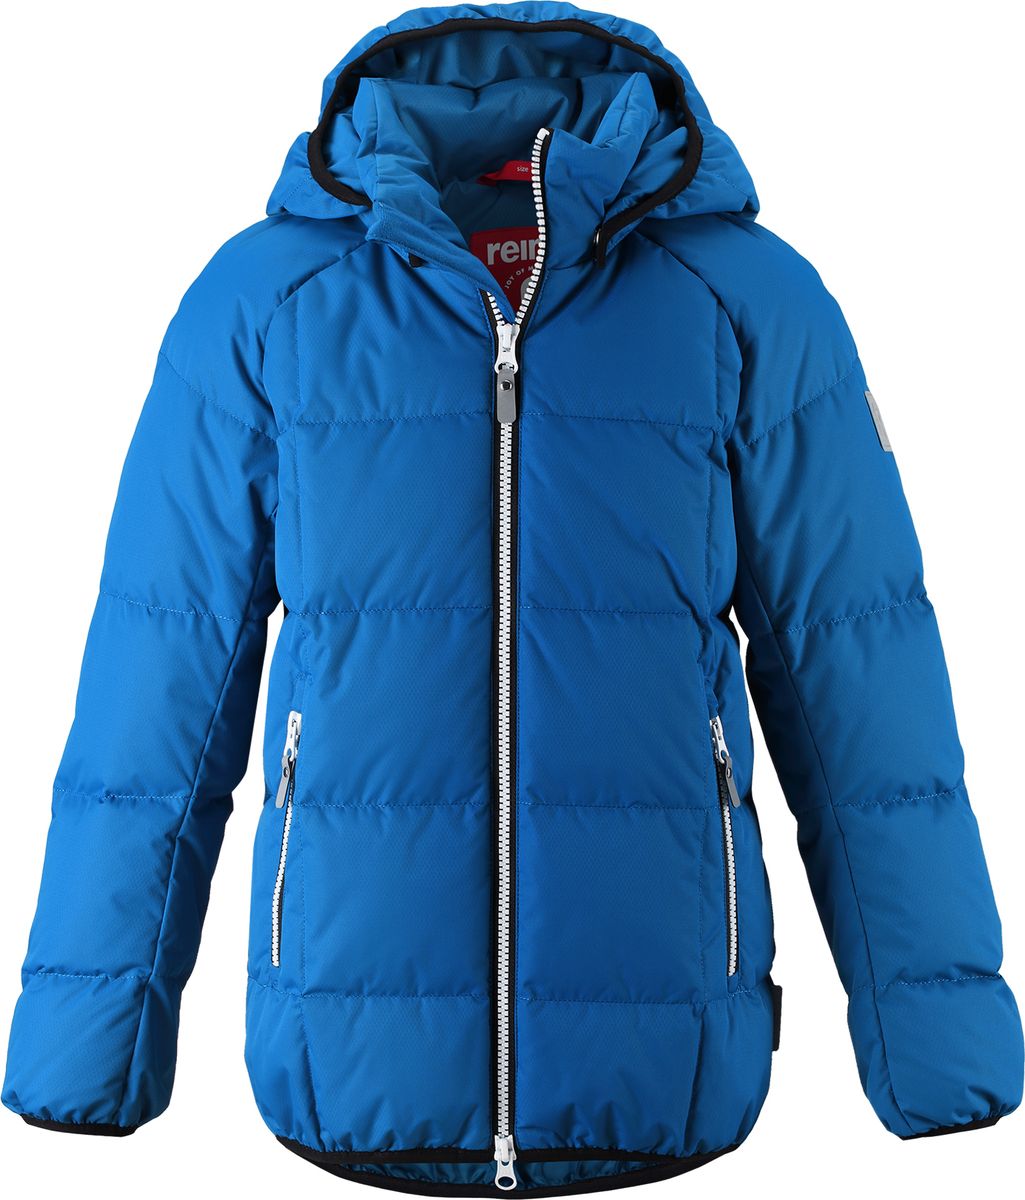 Куртка для мальчика Reima Jord, цвет: синий. 5313596680. Размер 152